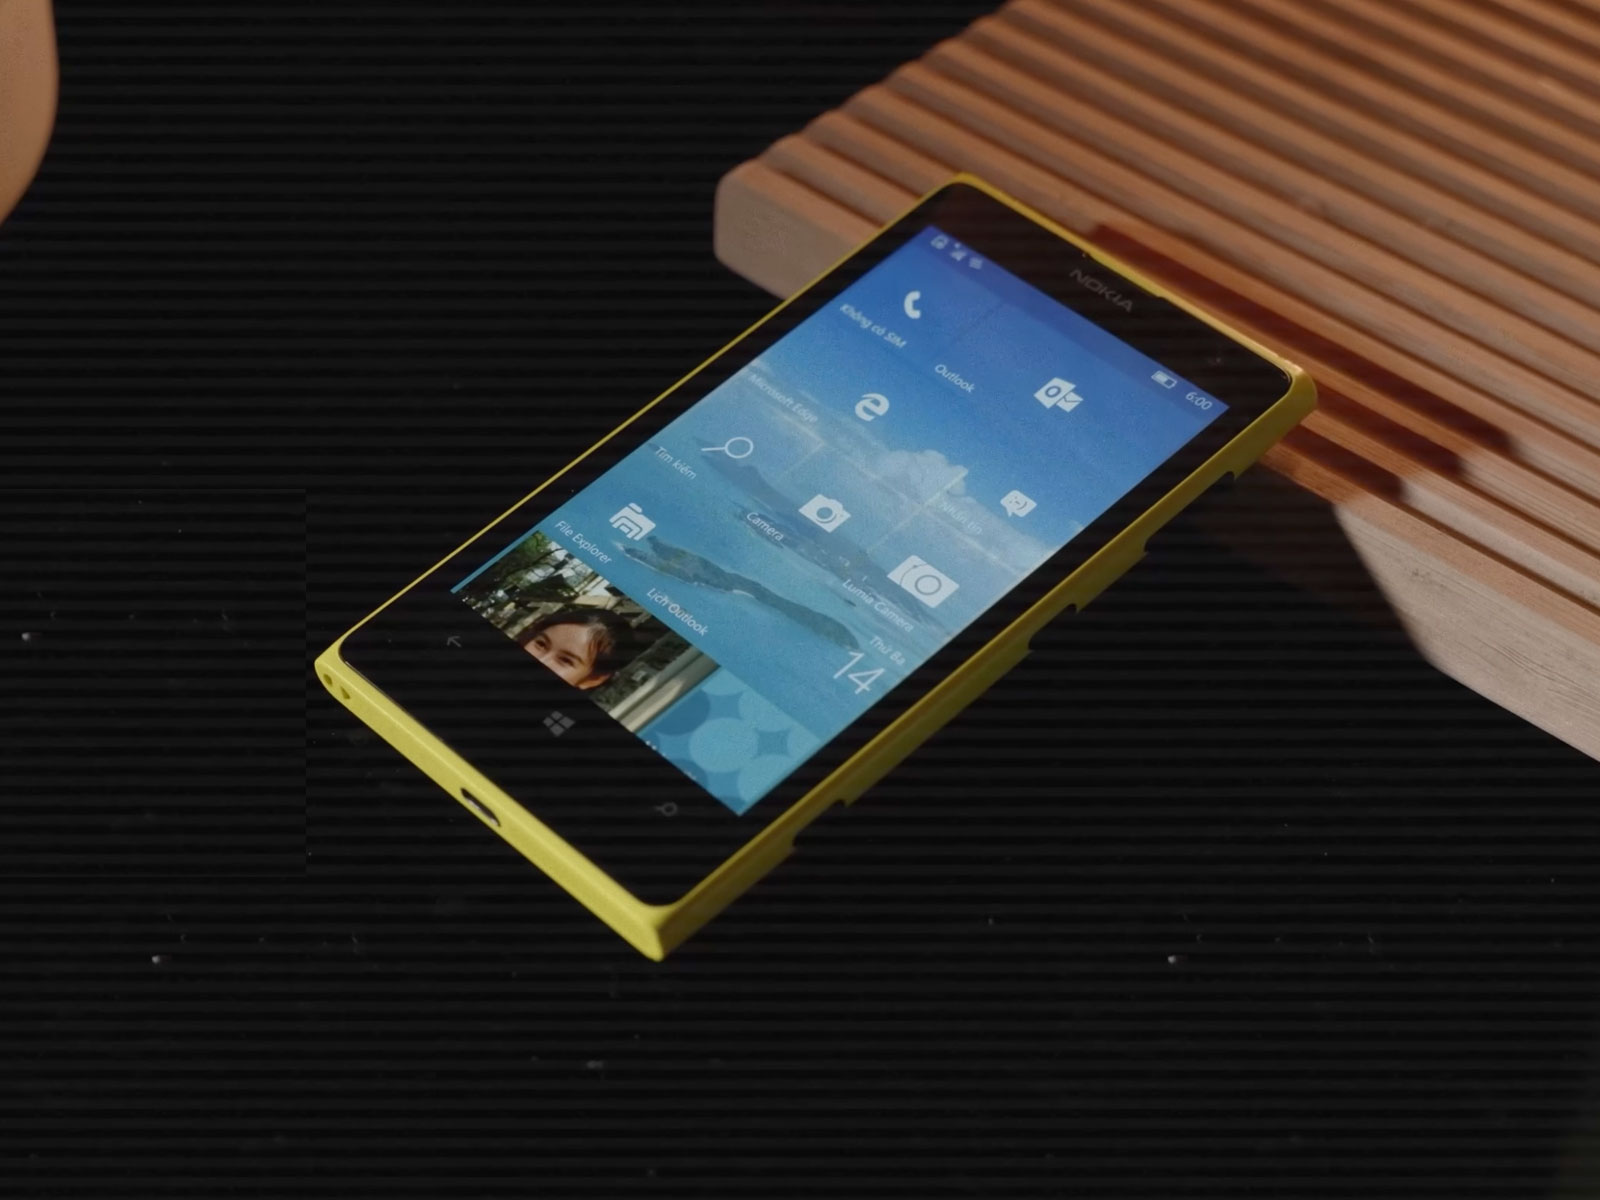 Nokia Lumia 520 (Red) : Amazon.in: Electronics